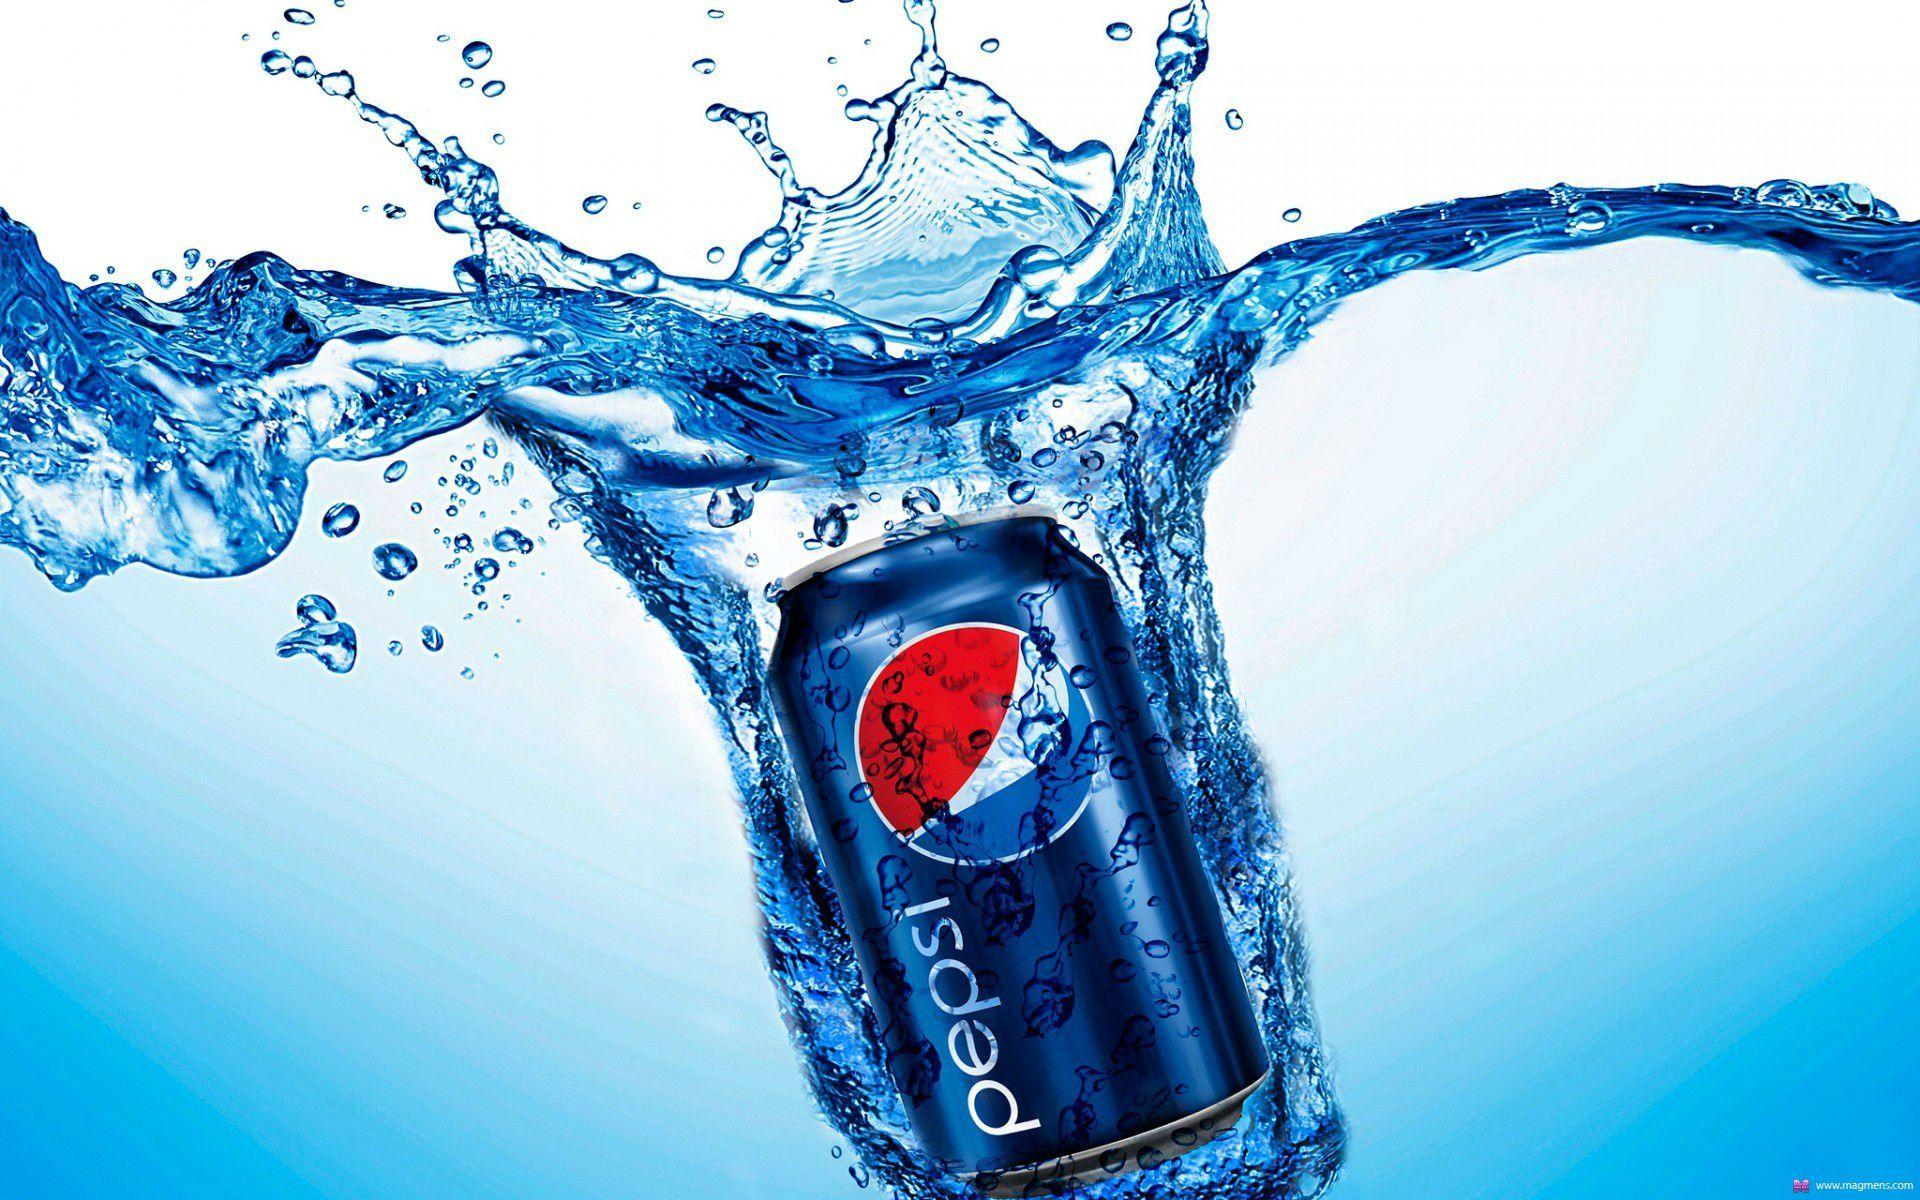 Pepsi wallpaper 2018 in Brands & Logos